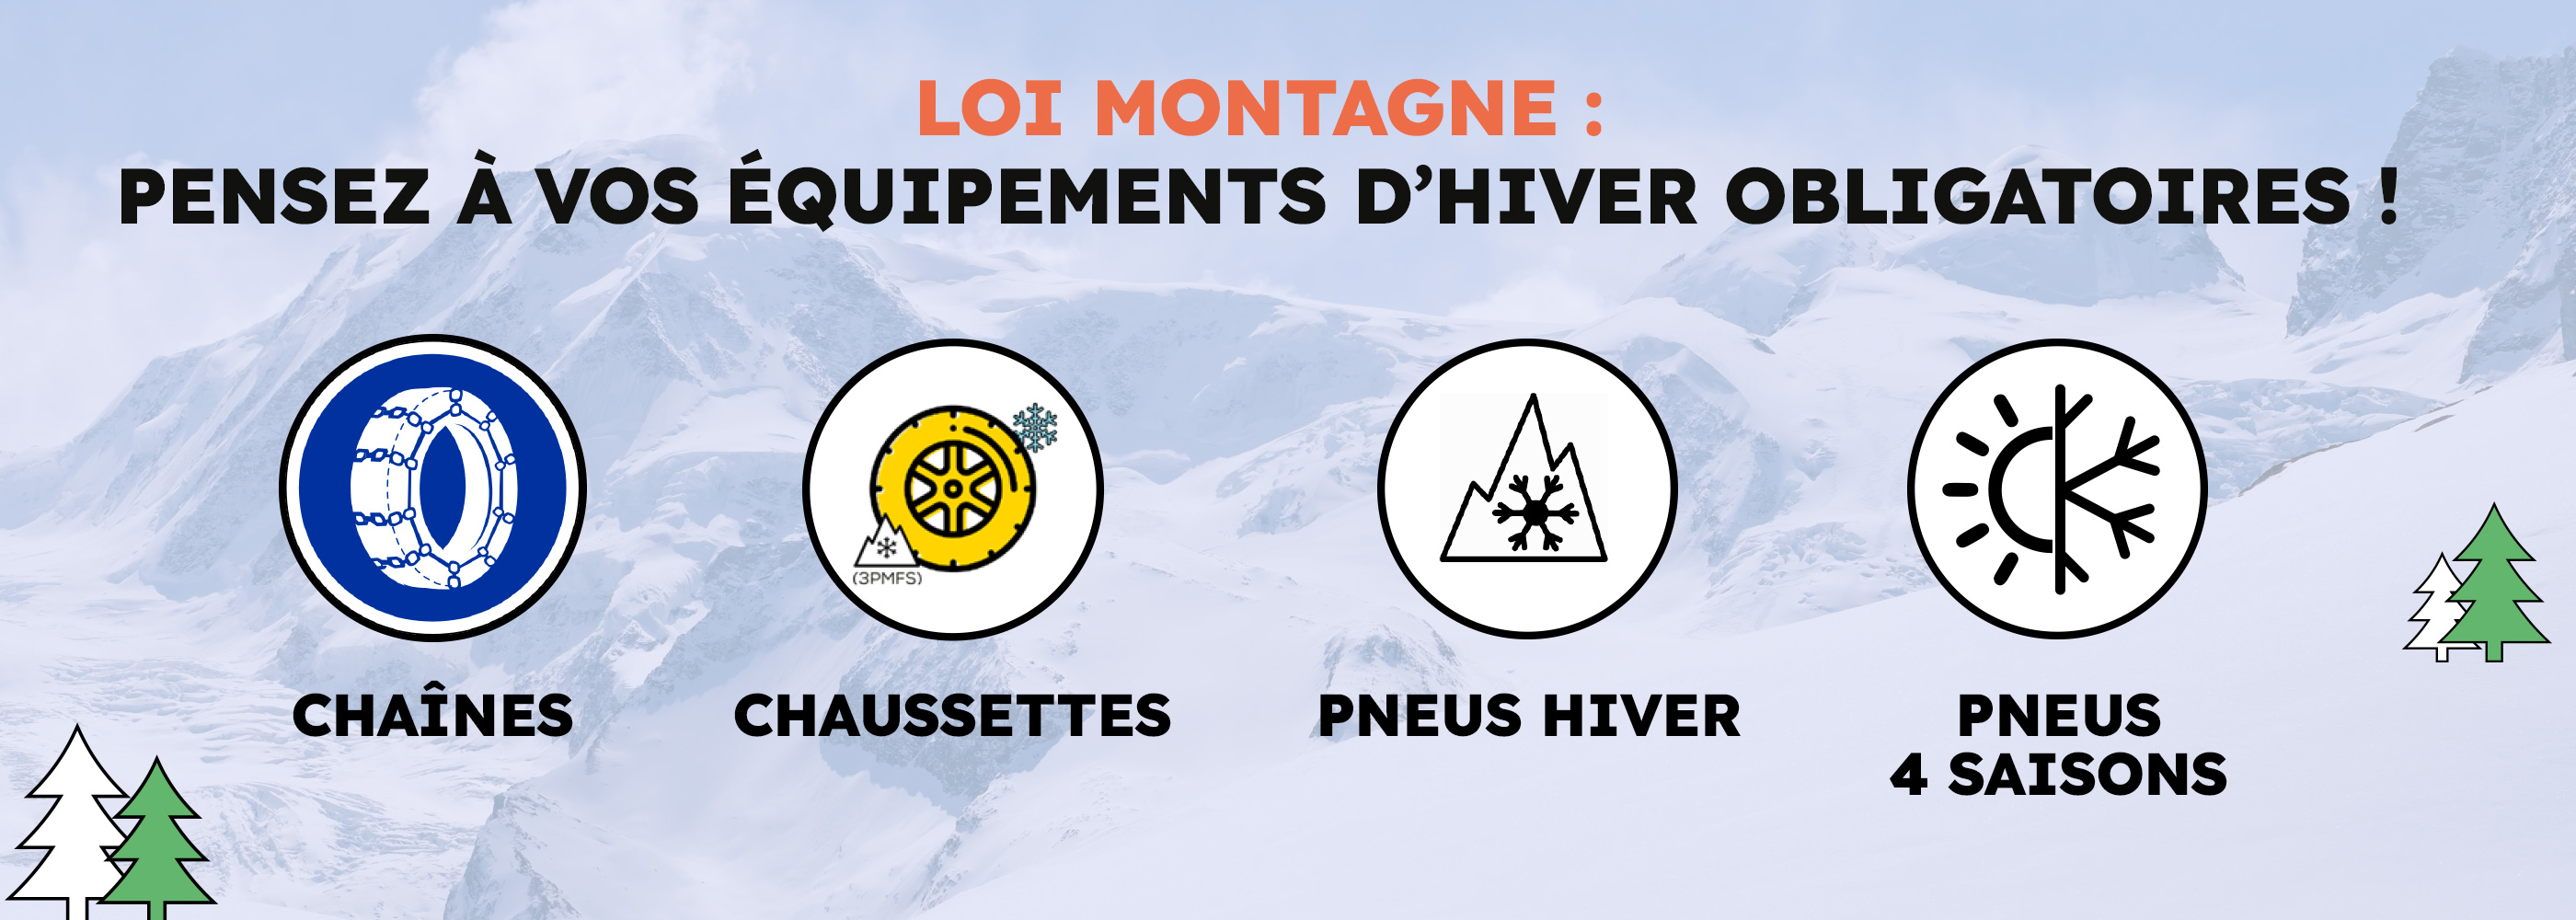 Loi Montagne II : pneus neiges et équipements obligatoires, quoi